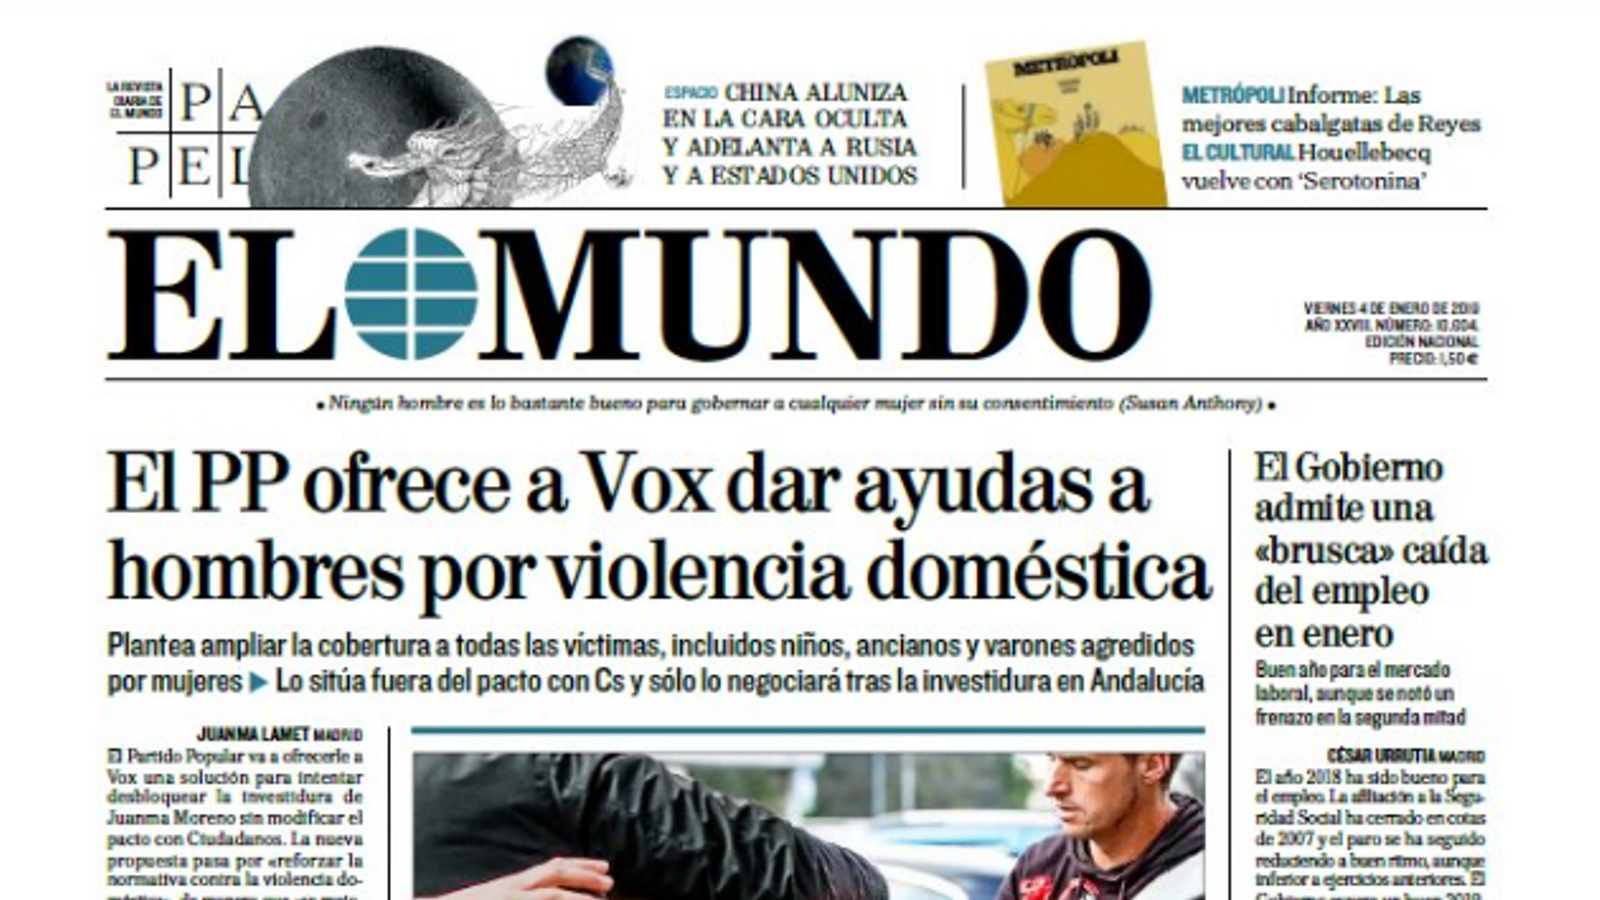 "El PP ofereix a Vox donar ajudes als homes per violència domèstica", a la portada d''El Mundo'